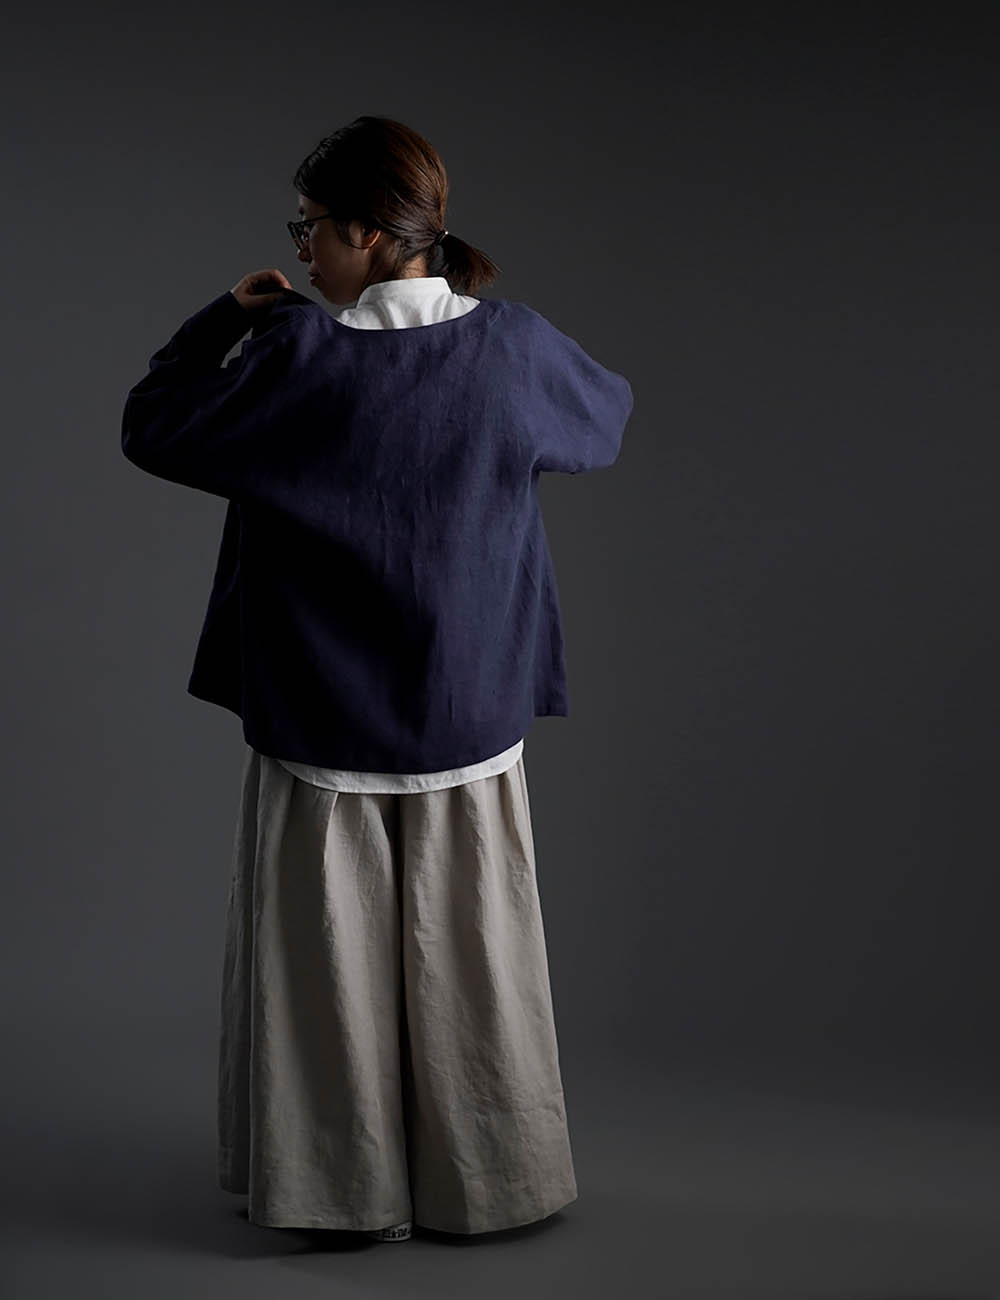 【10月9日21時～販売開始】wafu Premium Linen 起毛 ノーカラーシャツジャケット / ネイビー t036c-neb3